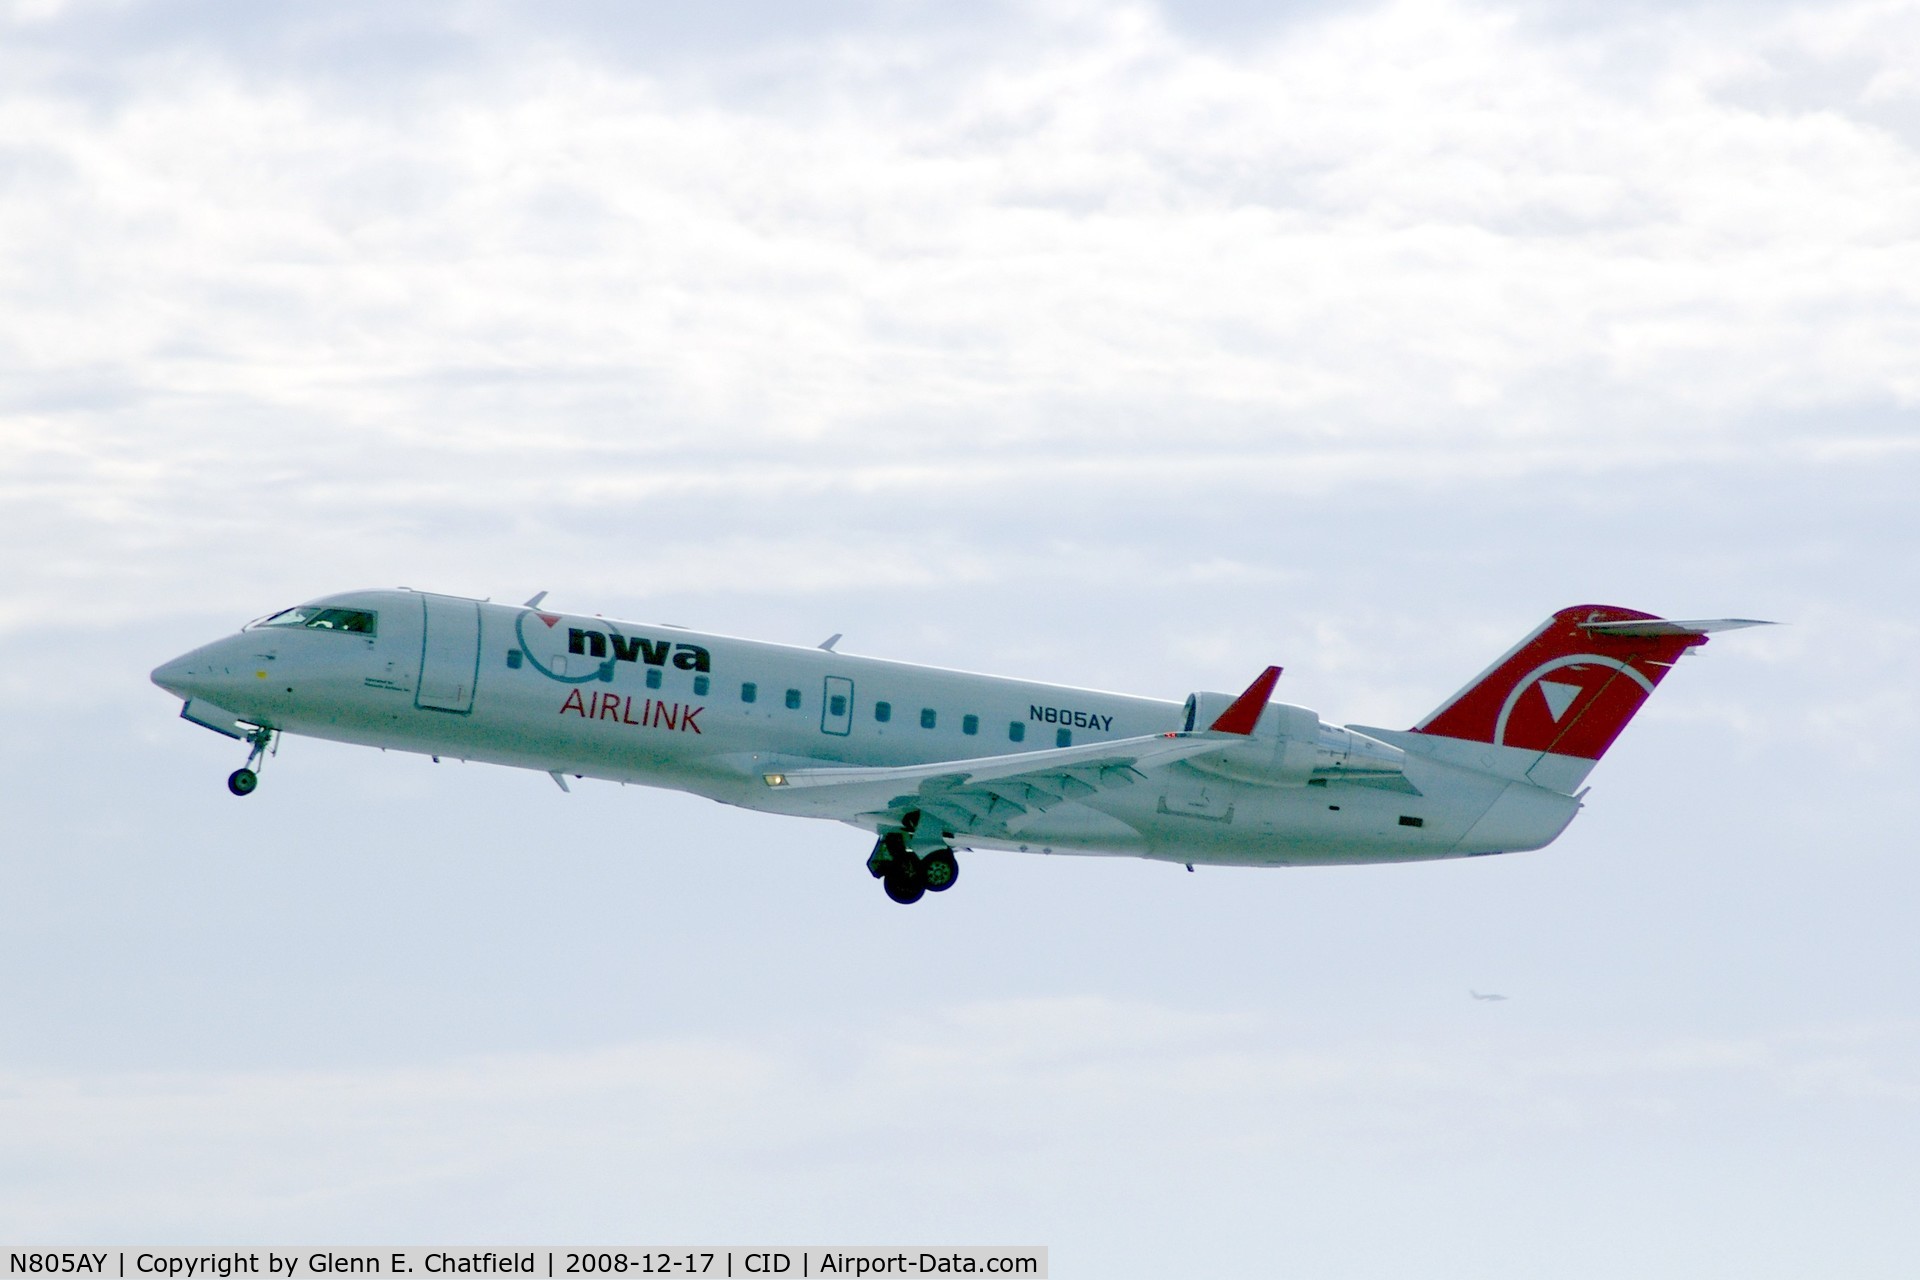 N805AY, 2005 Bombardier CRJ-200LR (CL-600-2B19) C/N 8005, Departing Runway 9.